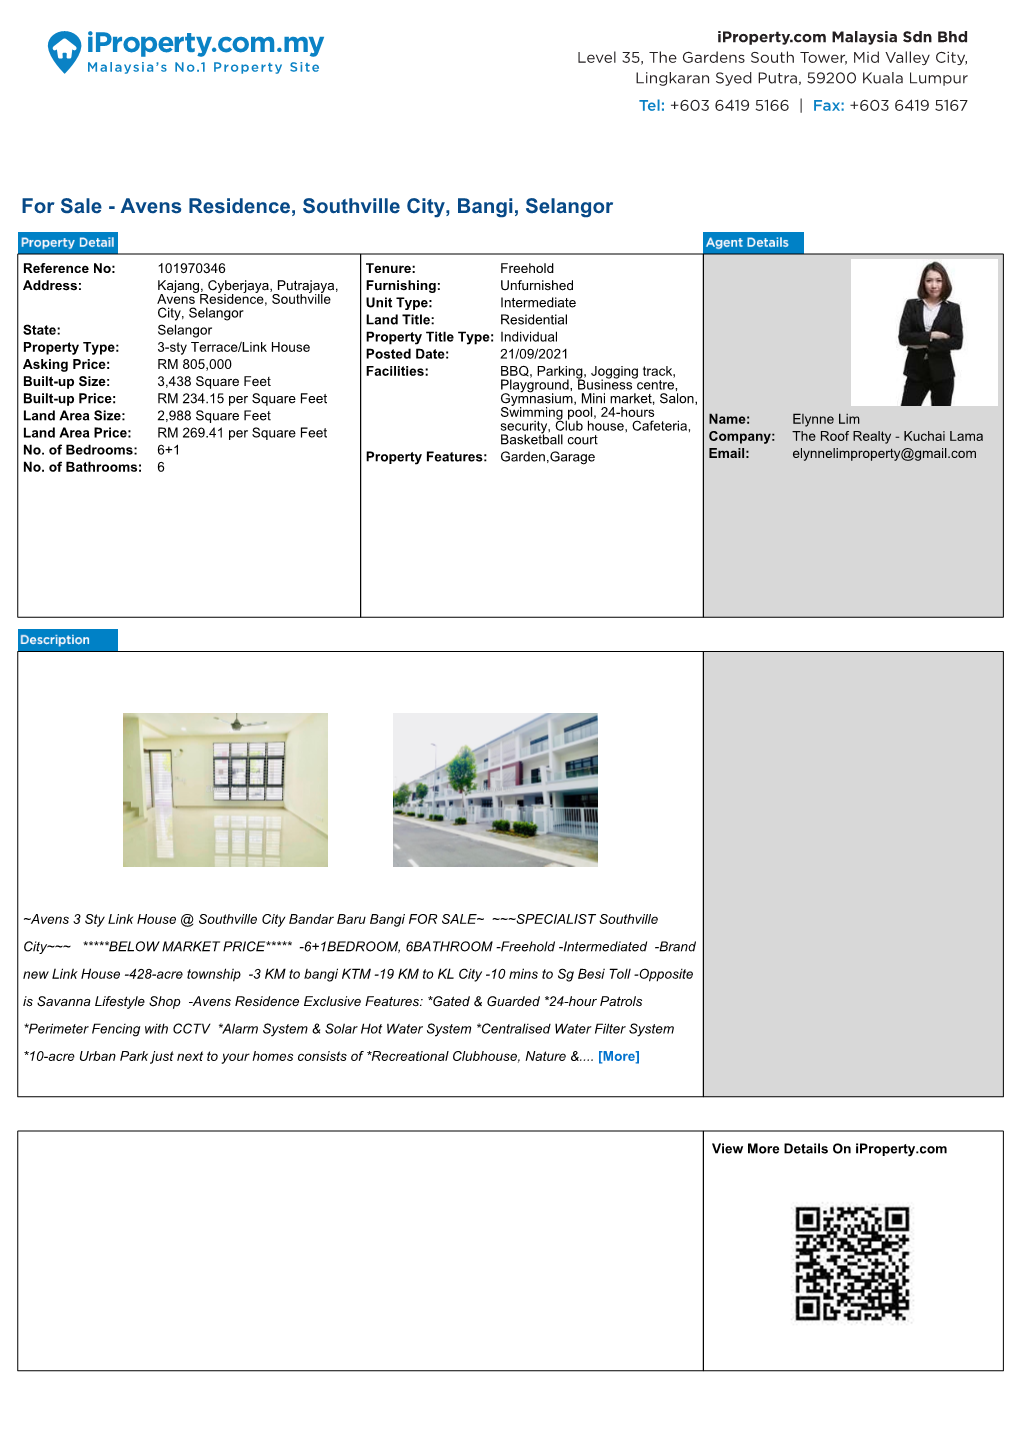 For Sale - Avens Residence, Southville City, Bangi, Selangor